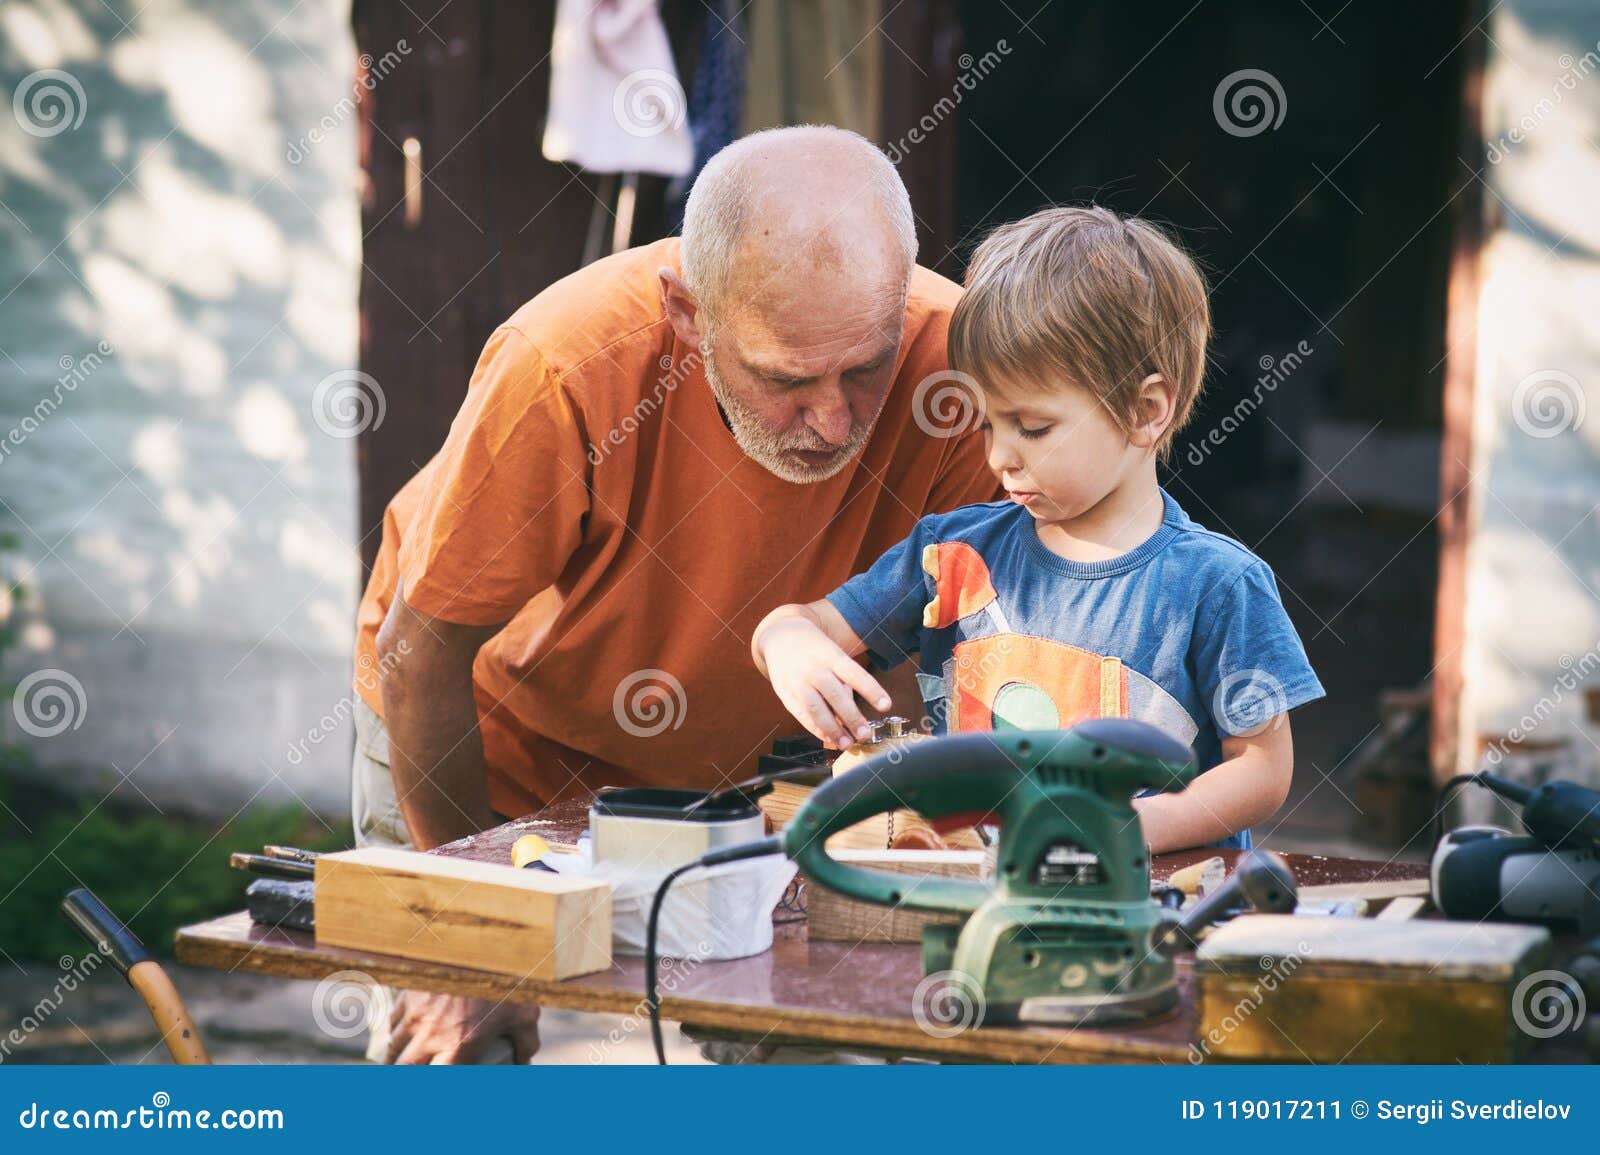 Дедушка учит внучку. Дед и внук мастерят. Дедушка чинит. Дедушка учит внука. Хобби для дедушки.